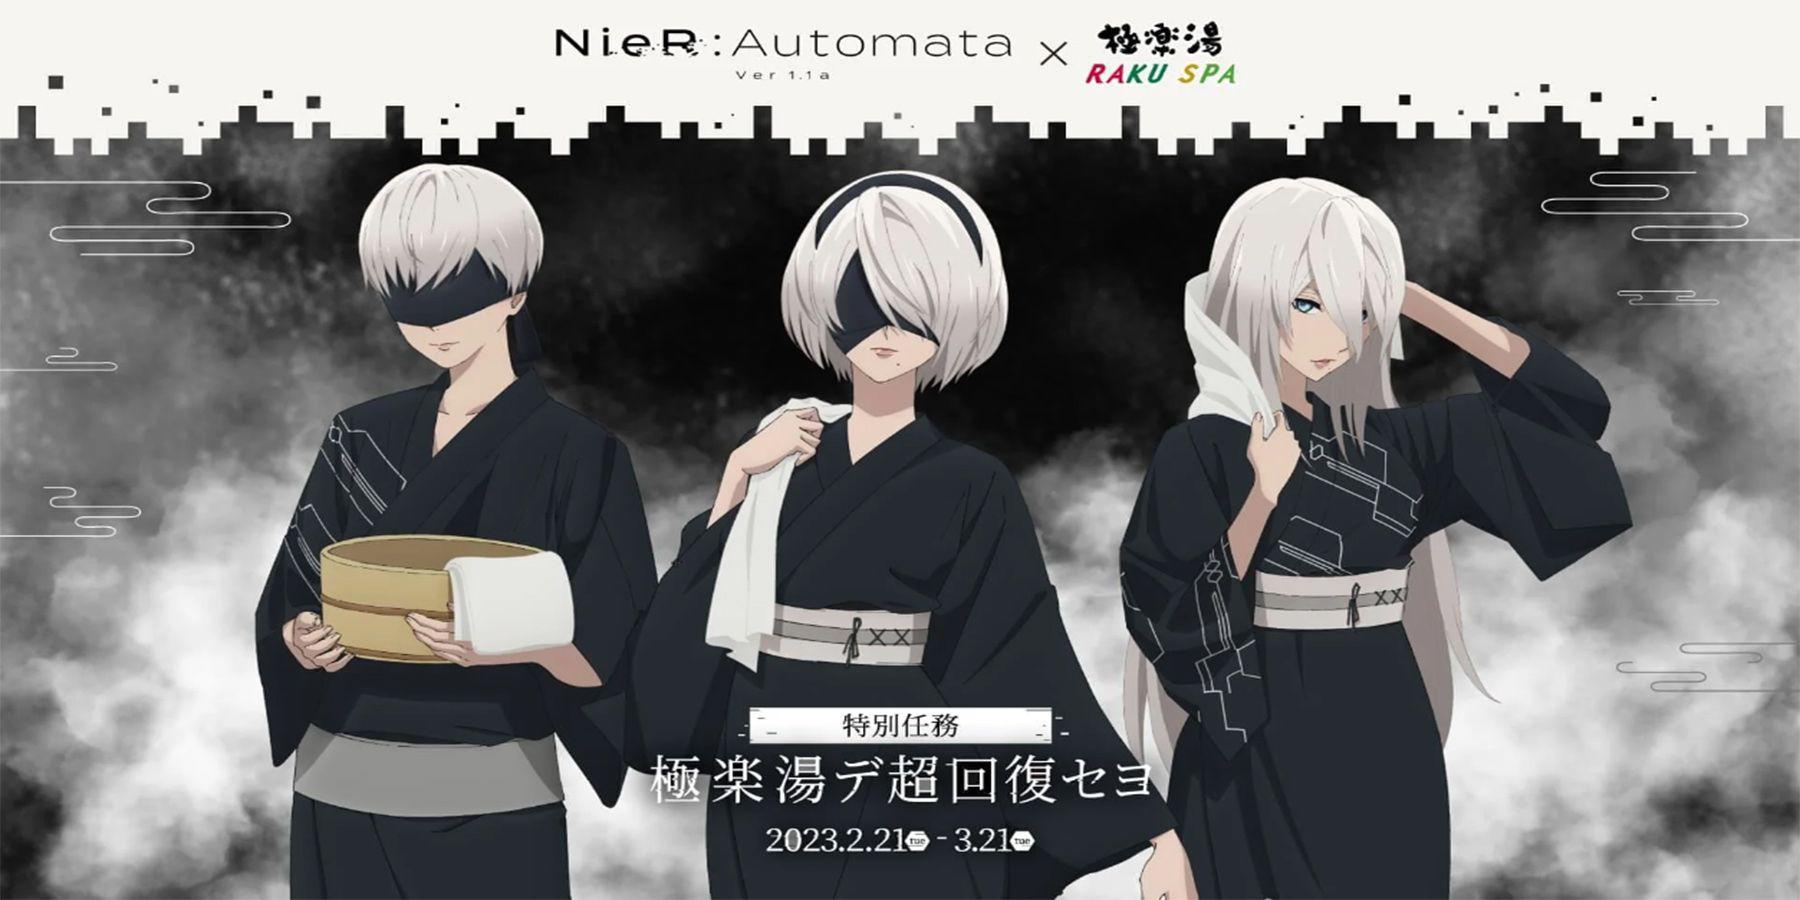 Colaborações NieR Automata com Animate Cafe e Raku Spa são oficialmente anunciadas